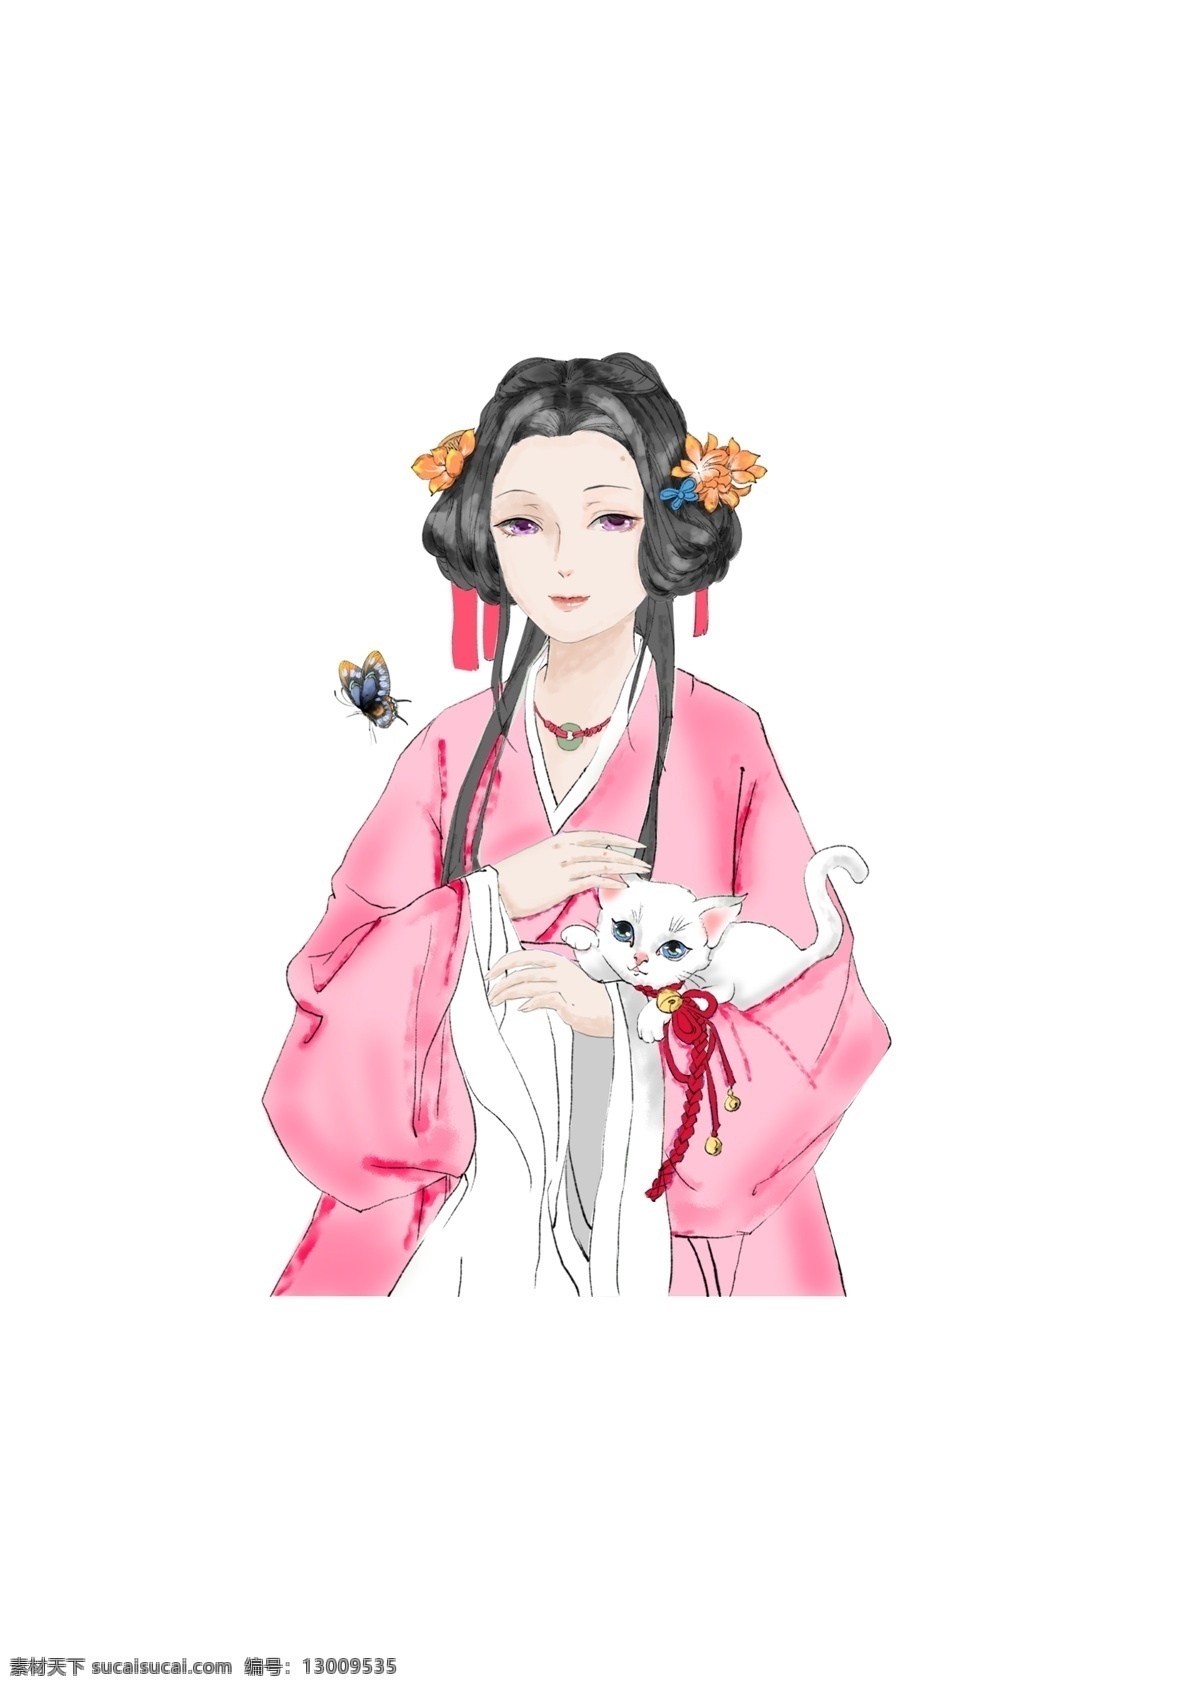 中国 风 水彩 少女 可爱 中国风 猫咪 蝴蝶 粉红色 可爱美丽 海报 人物 半身 手绘 复古 插画